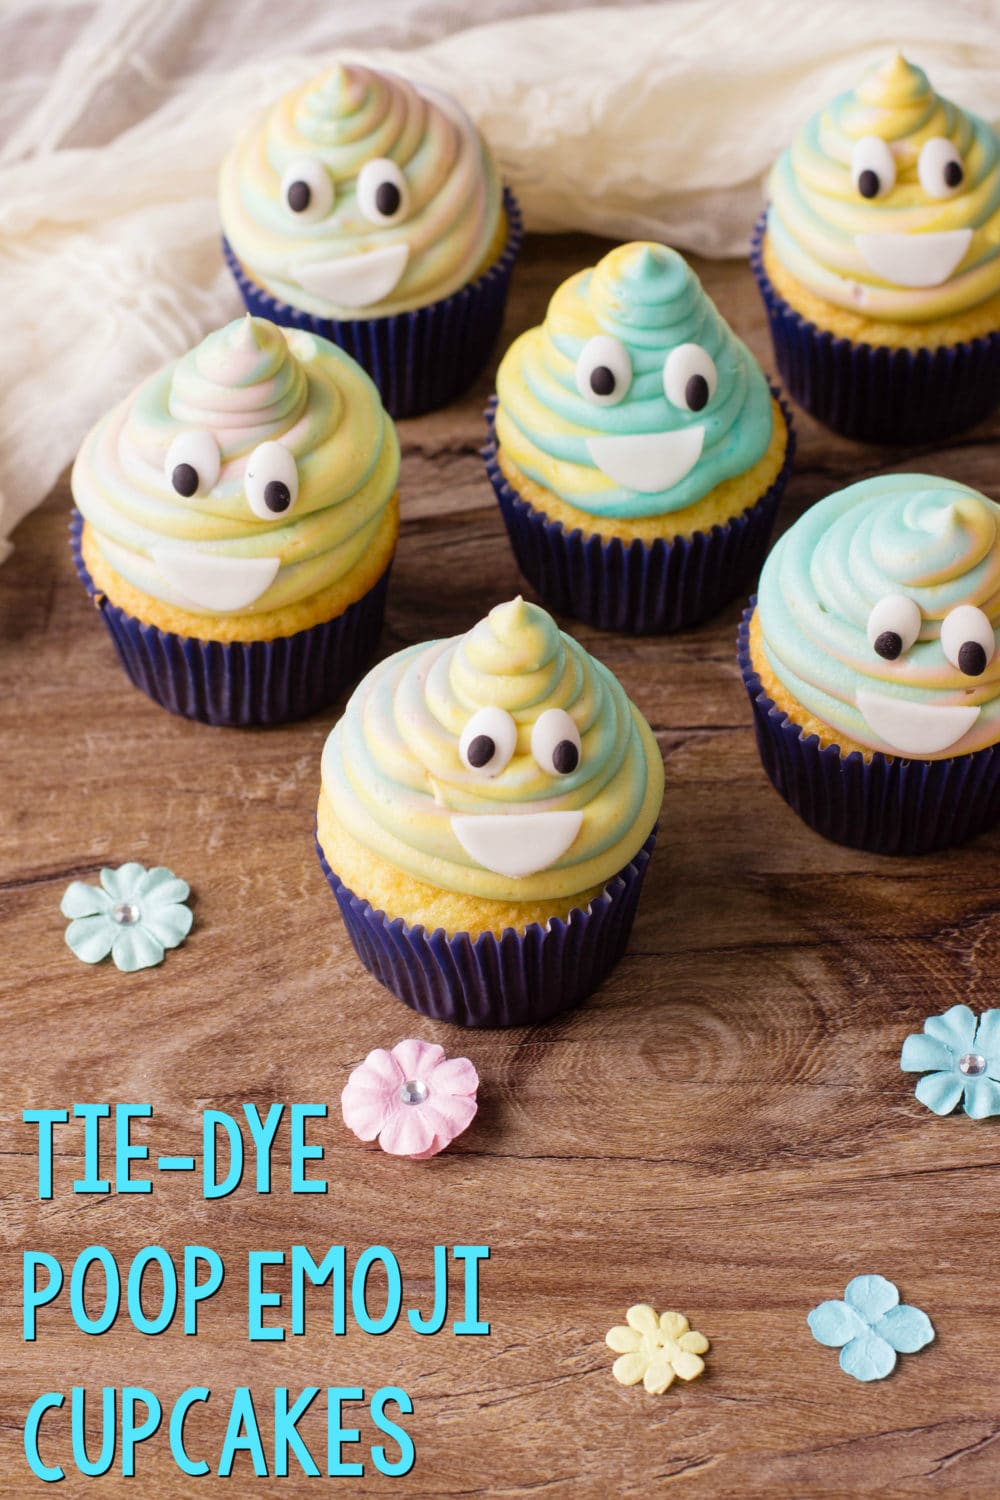 Tie-Dye Poop Emoji Cupcakes